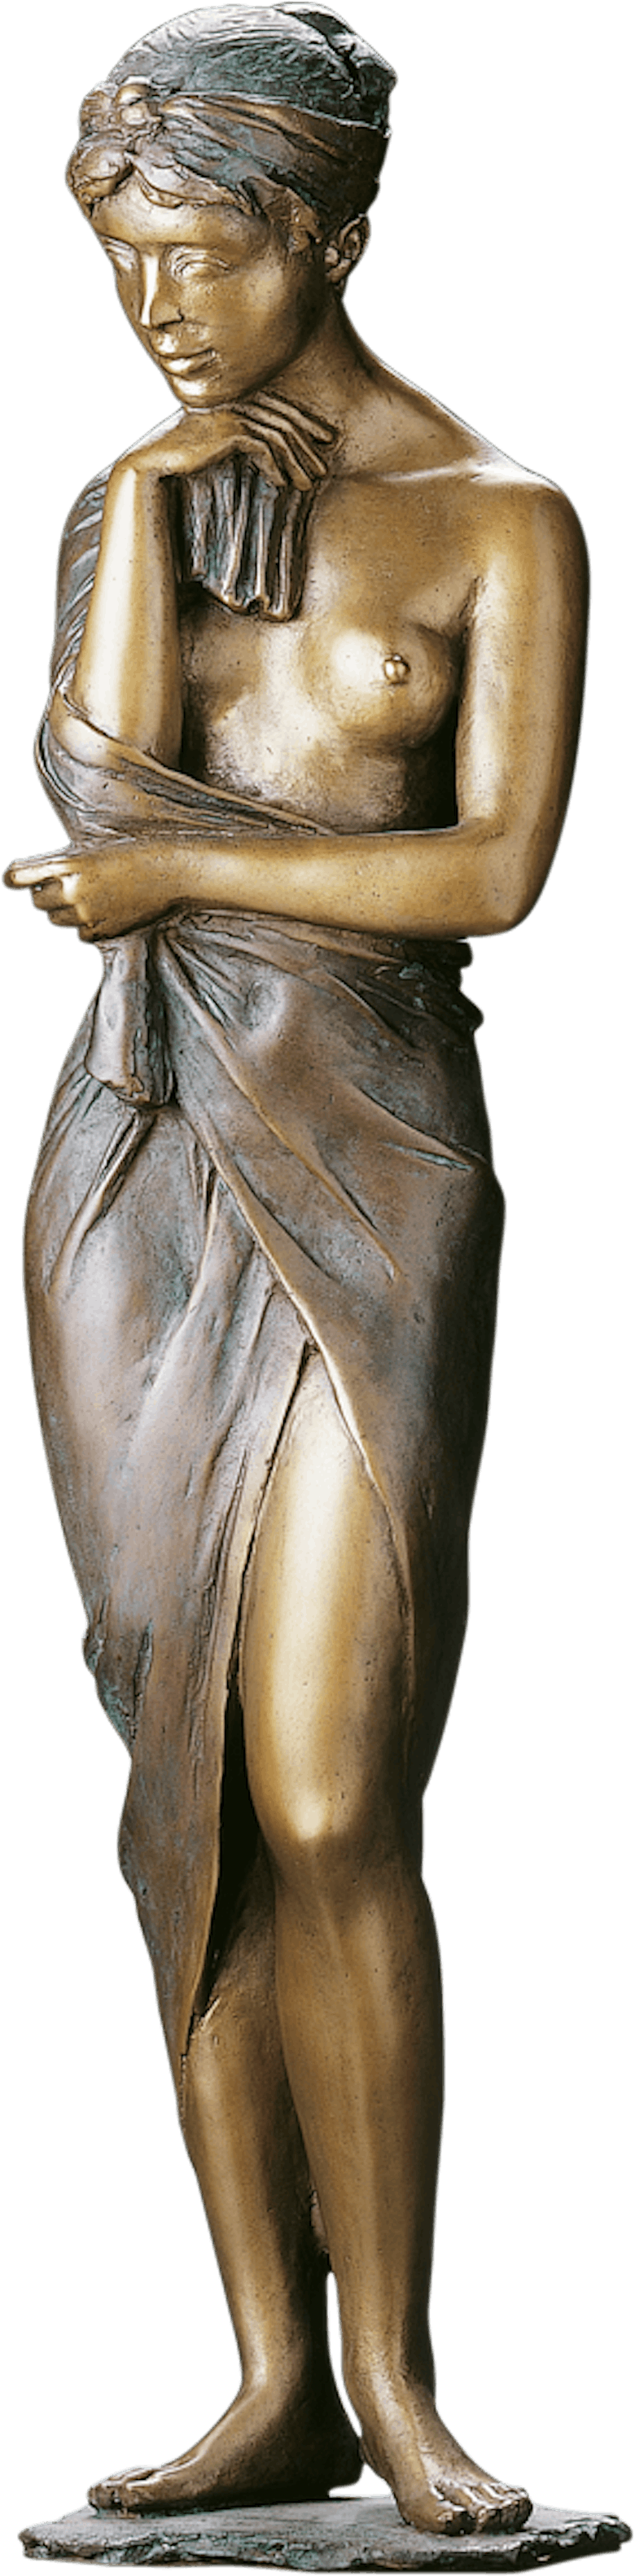 Bronzefigur Im Rosengarten von Erwin A. Schinzel